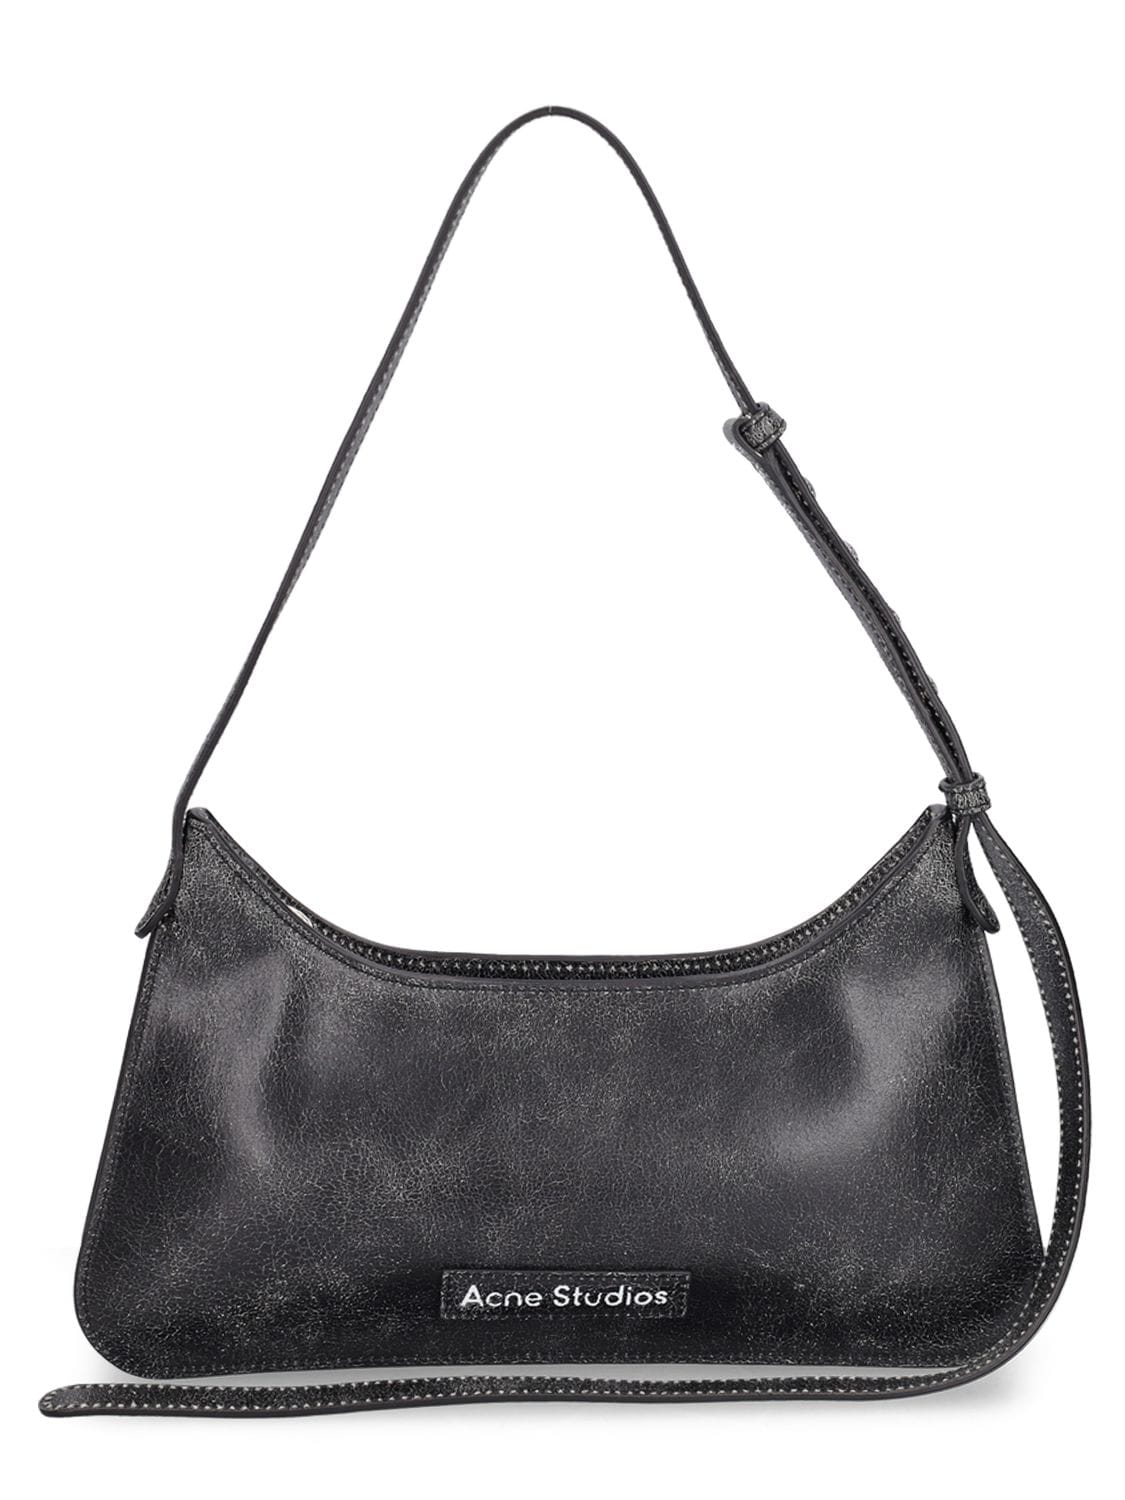 Acne Studios Crackled Leather Shoulder Bag In Black